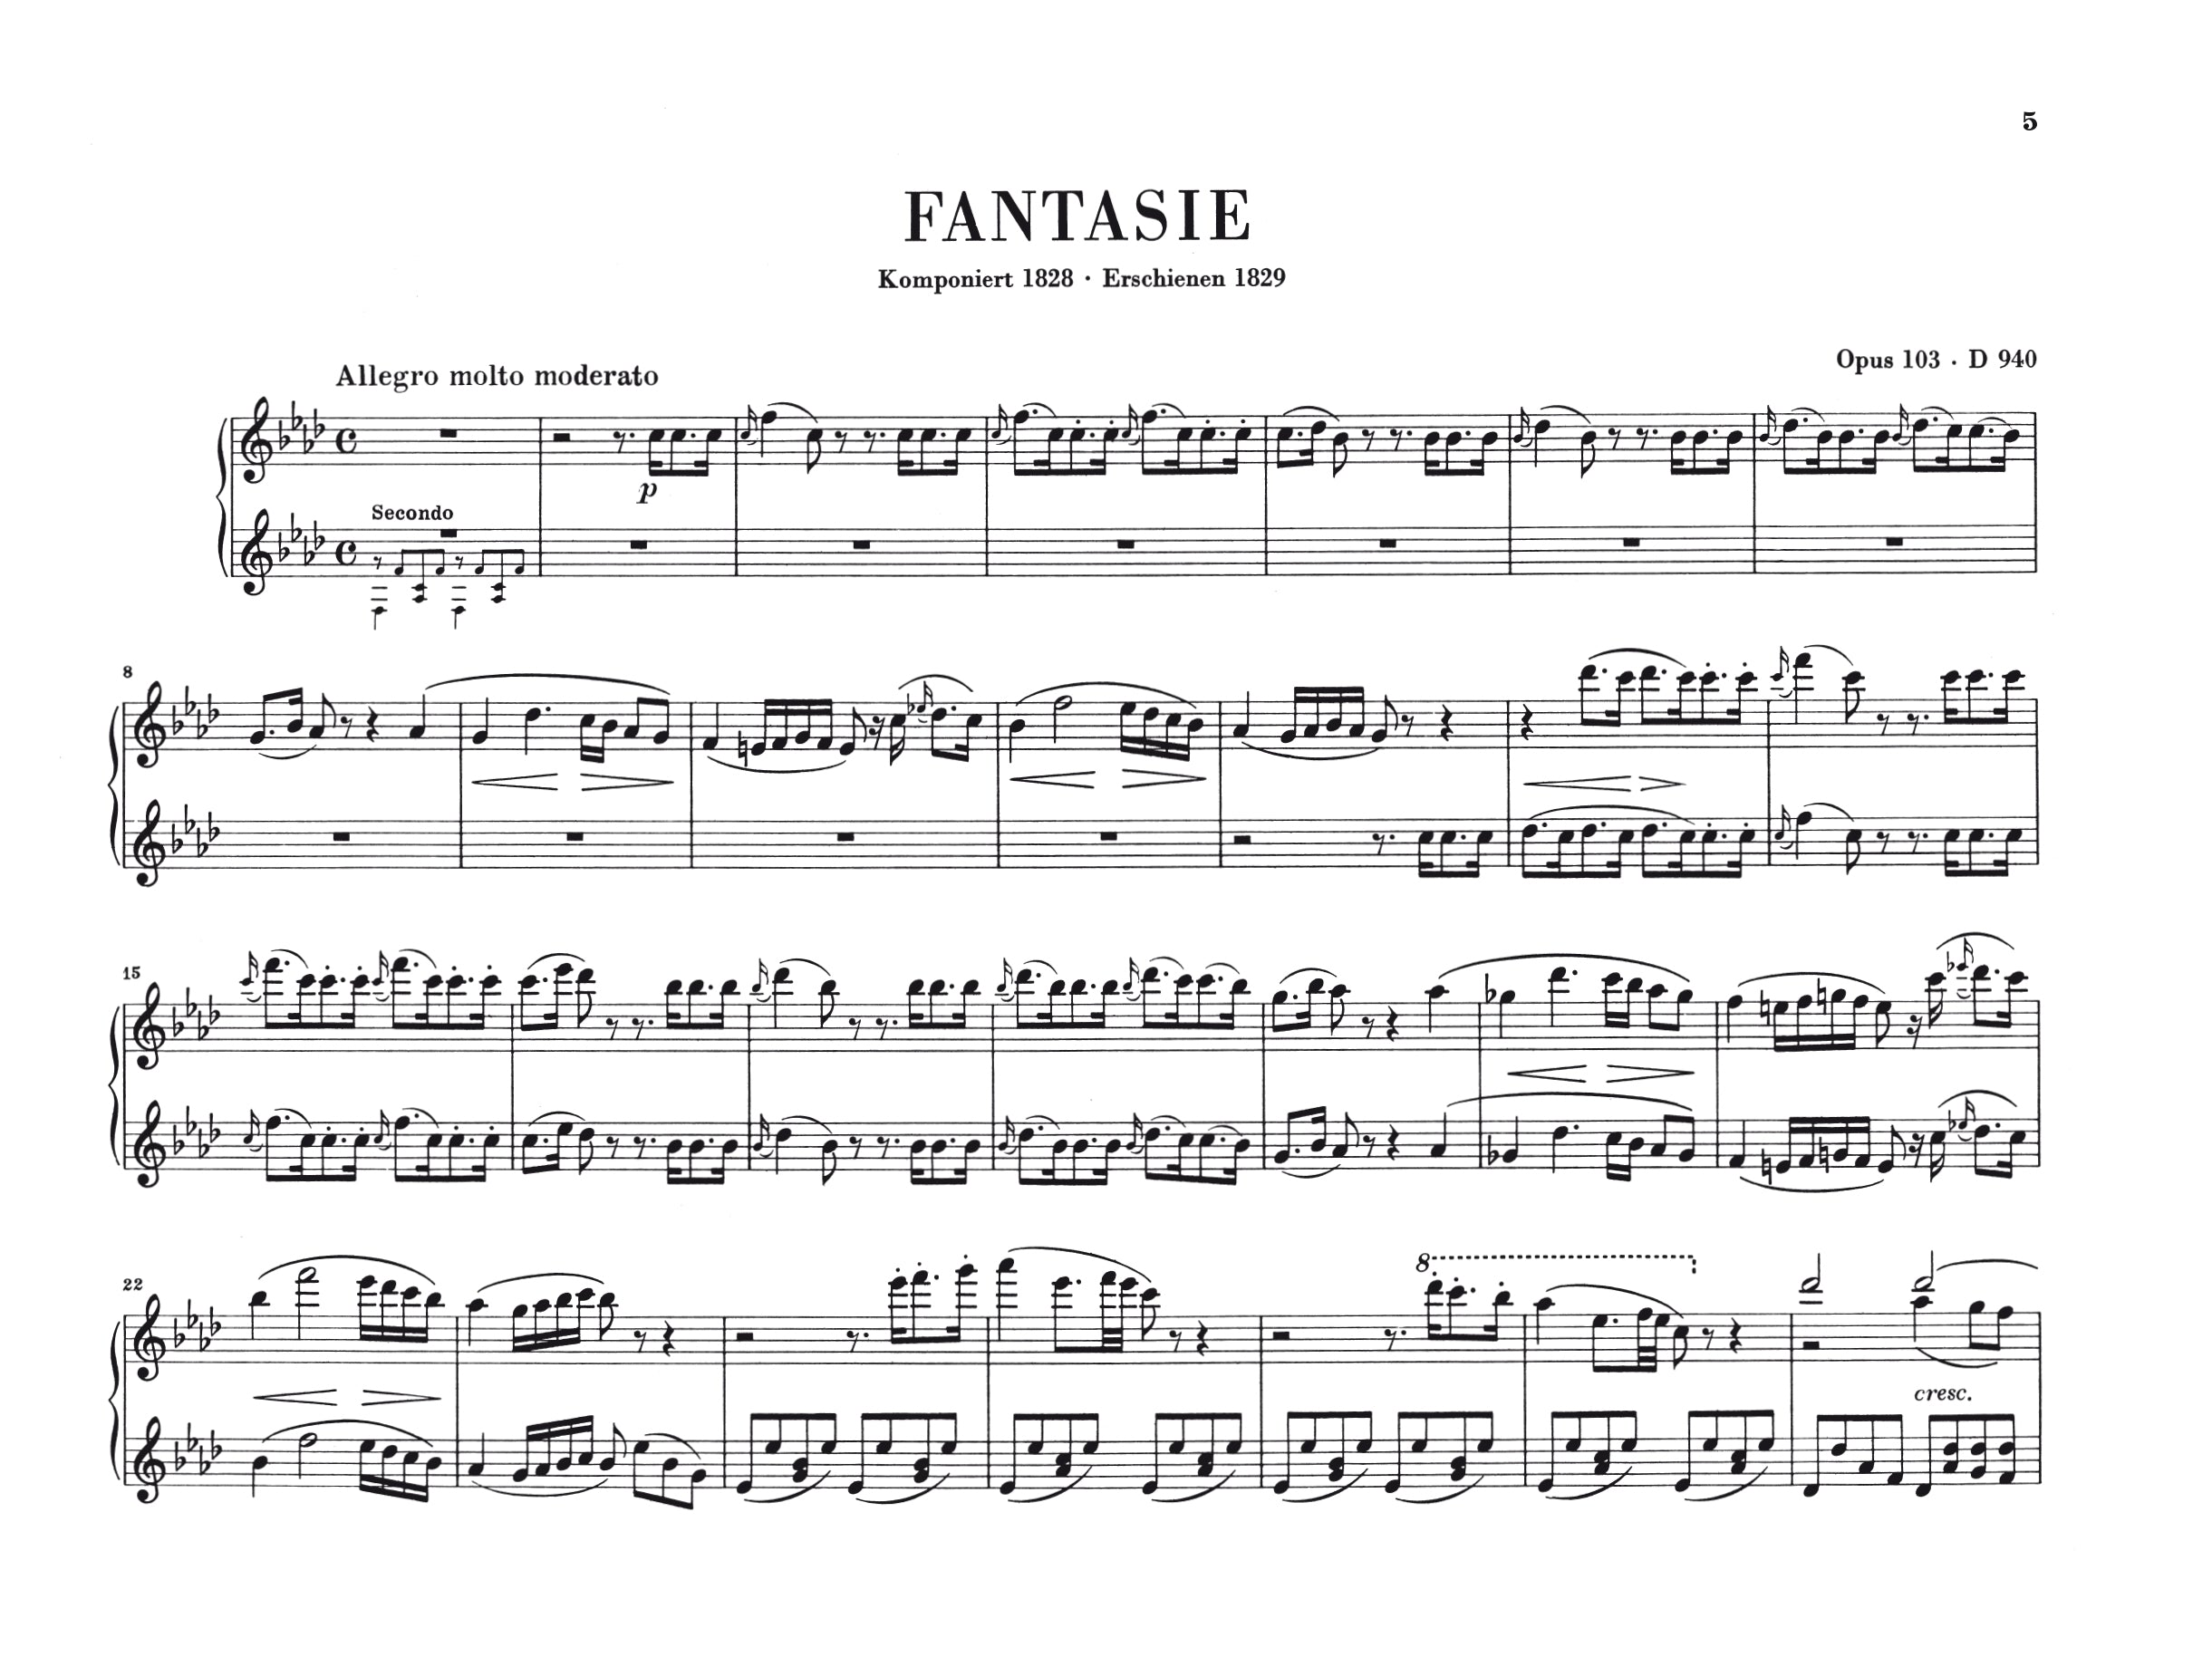 Schubert: Fantasy f minor op. 103 D 940 - Piano, 4-hands